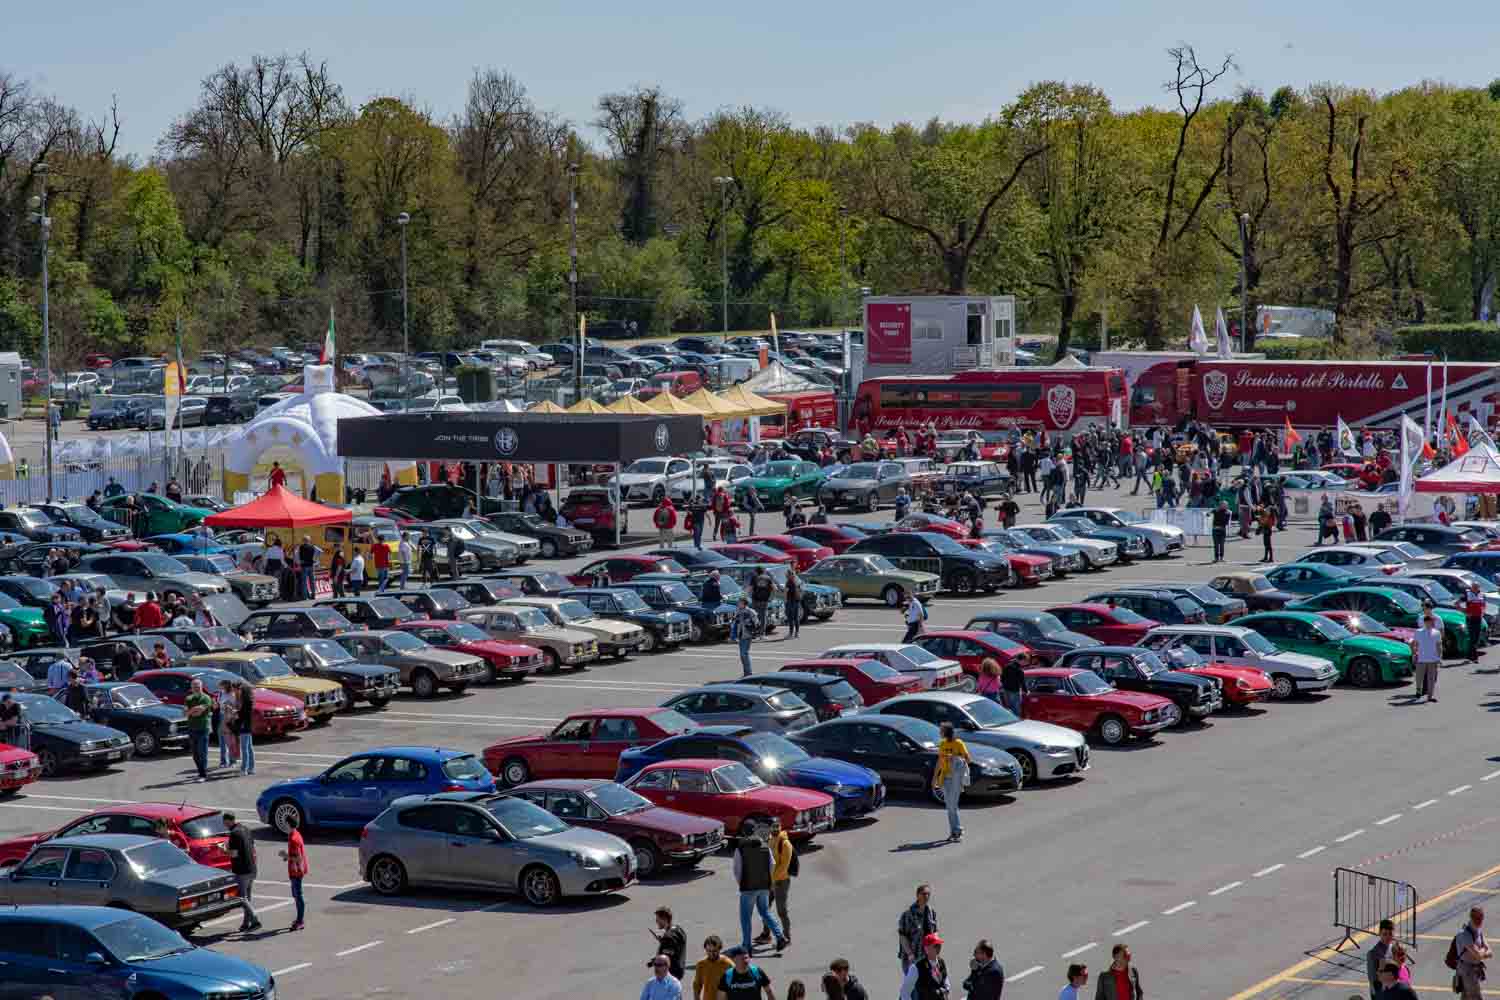 Alfa Romeo realizza a Monza il più grande raduno di vetture del Biscione provenienti da tutta Europa e appartenenti a club e privati.